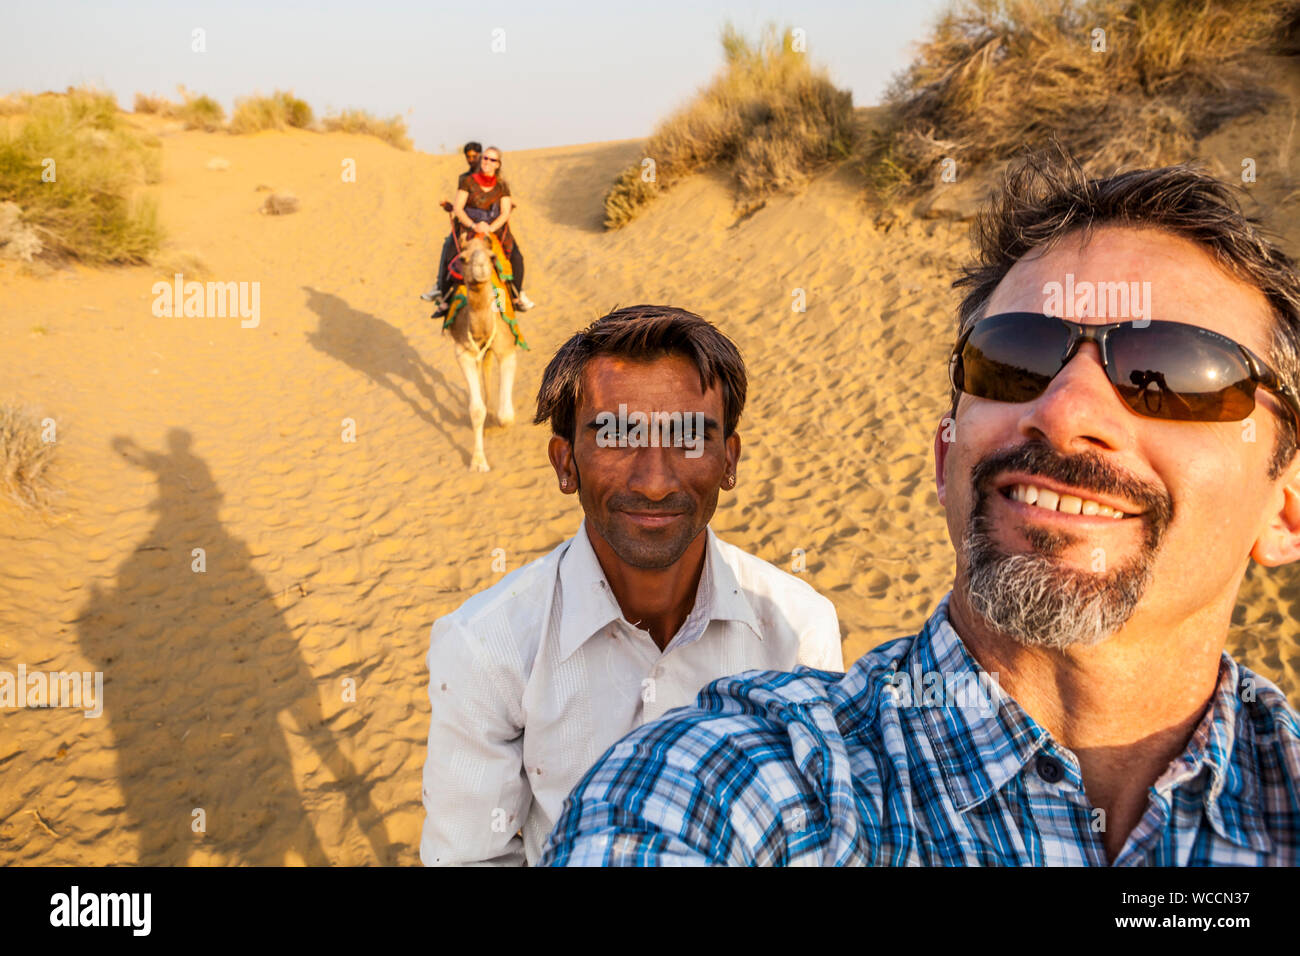 Ein kaukasischer Tourist auf einem Kamel Trek dauert eine selfie von sich selbst und seinem Fahrer sowie seine Frau auf ihrem Kamel mit ihrem Fahrer im Hintergrund. Stockfoto